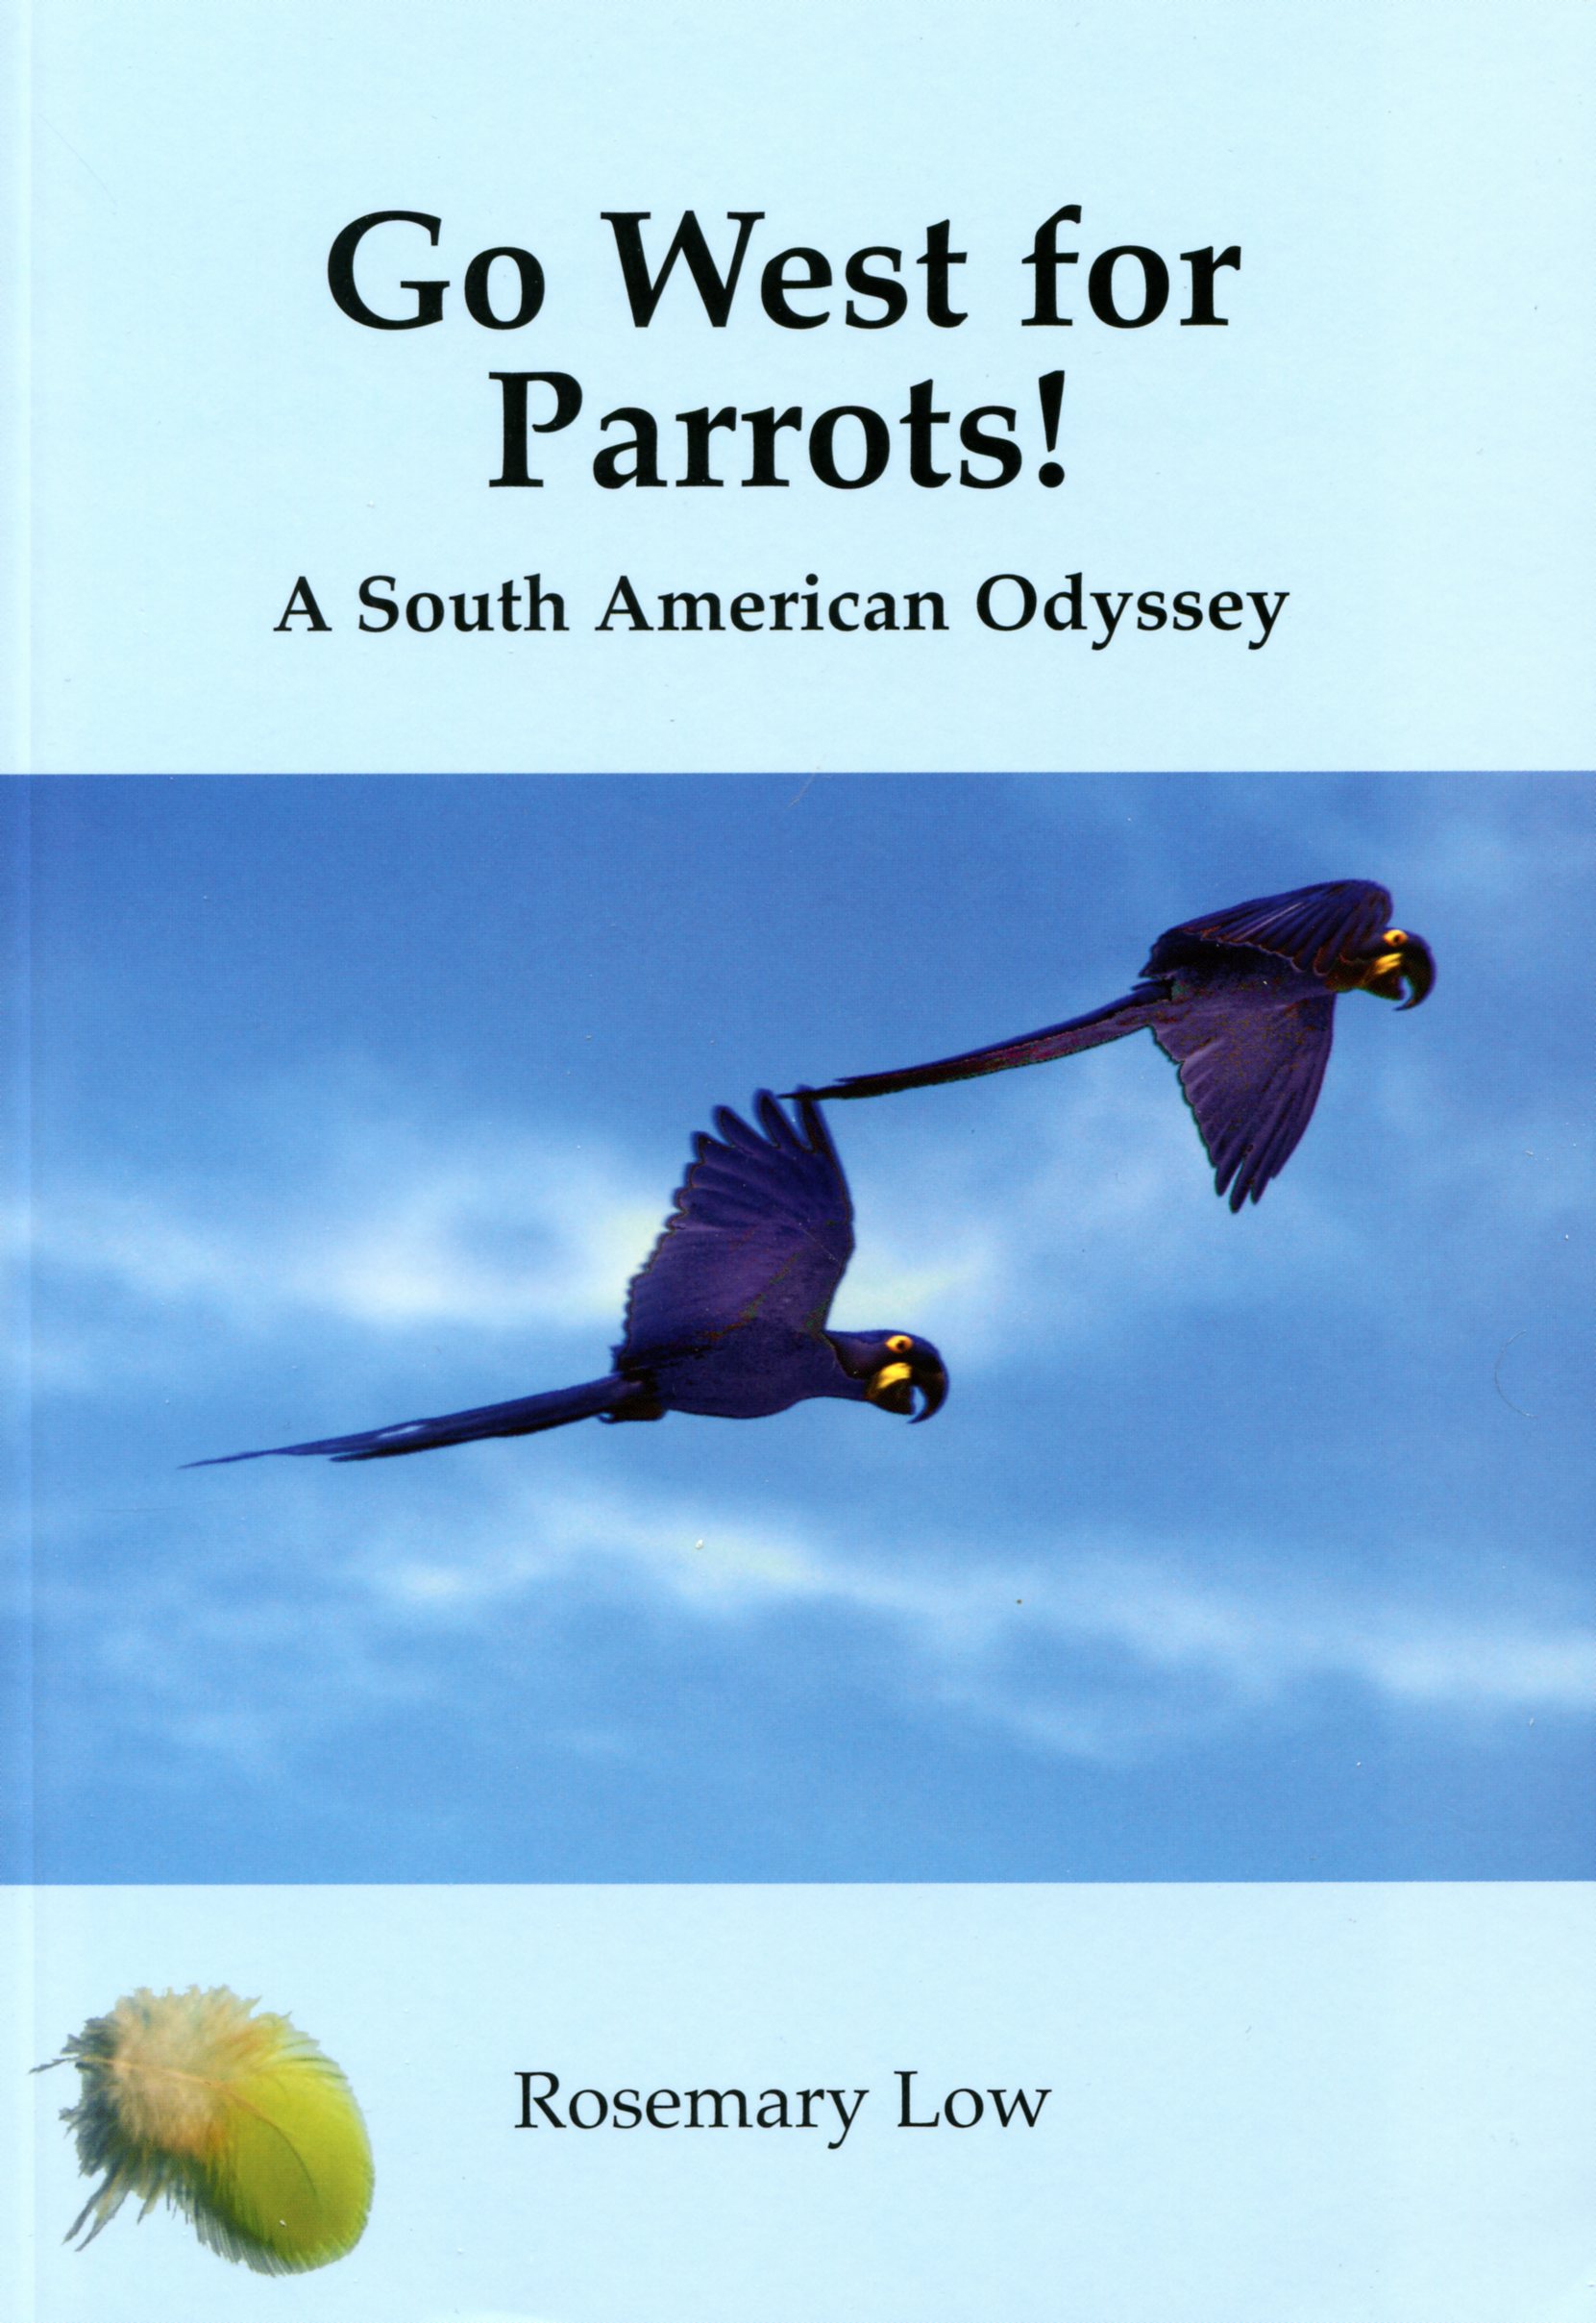 Go West for parrots!